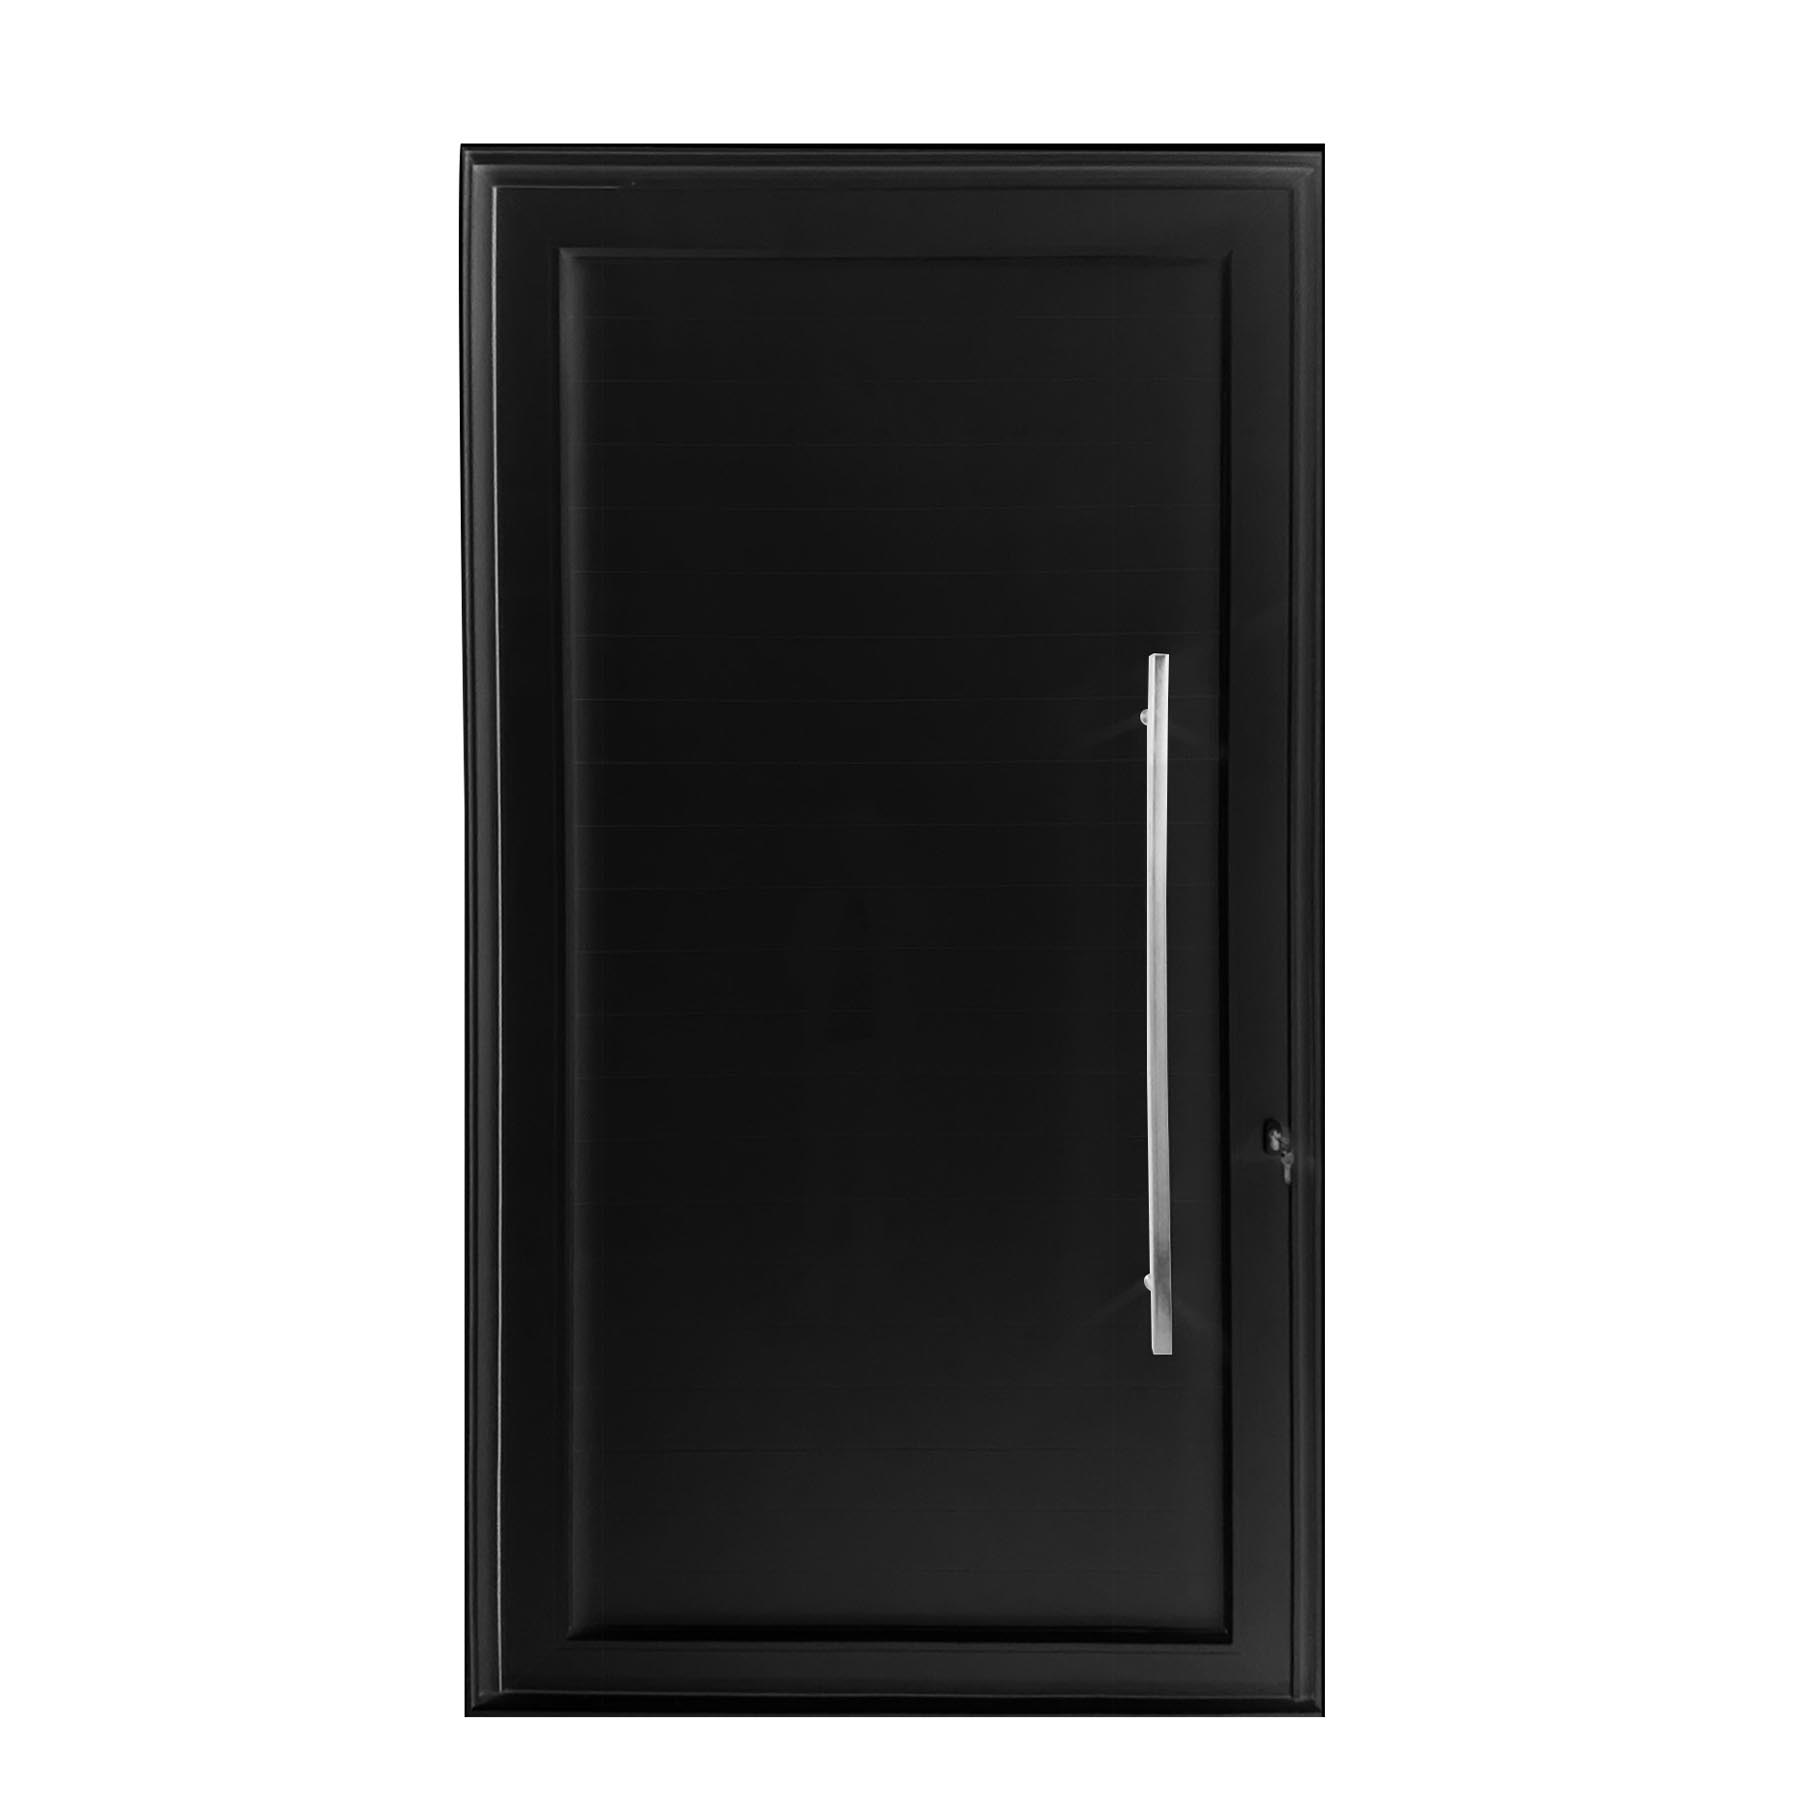 Porta de abrir 1 folha lambri preta 120 x 215 com puxador inox de 100cm - fechadura multiponto ( lado esquerdo) - Sociale